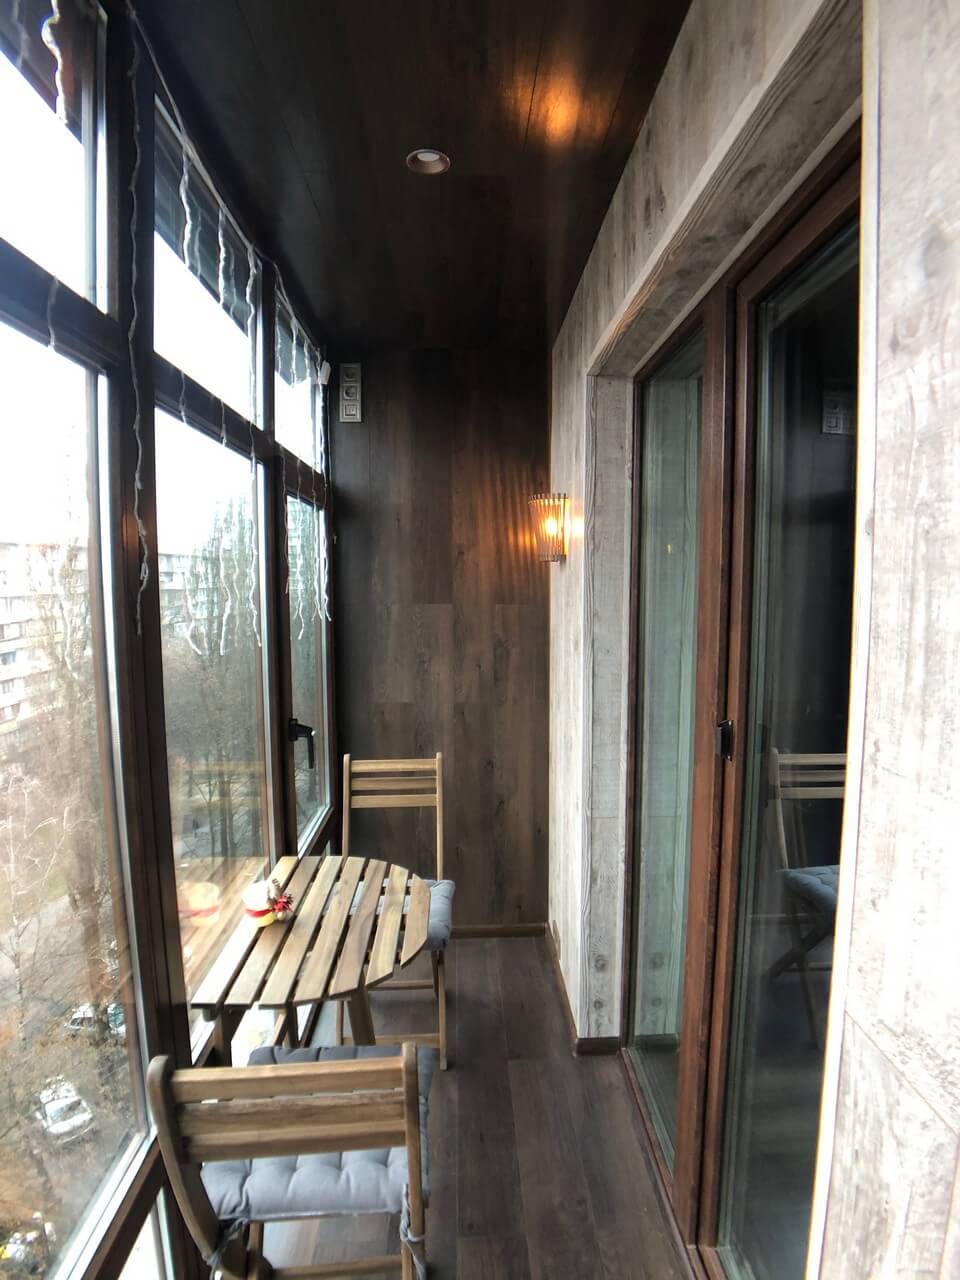 Французский балкон с отделкой ламинат в чешке. Киев, ул. Зодчих, 40 13